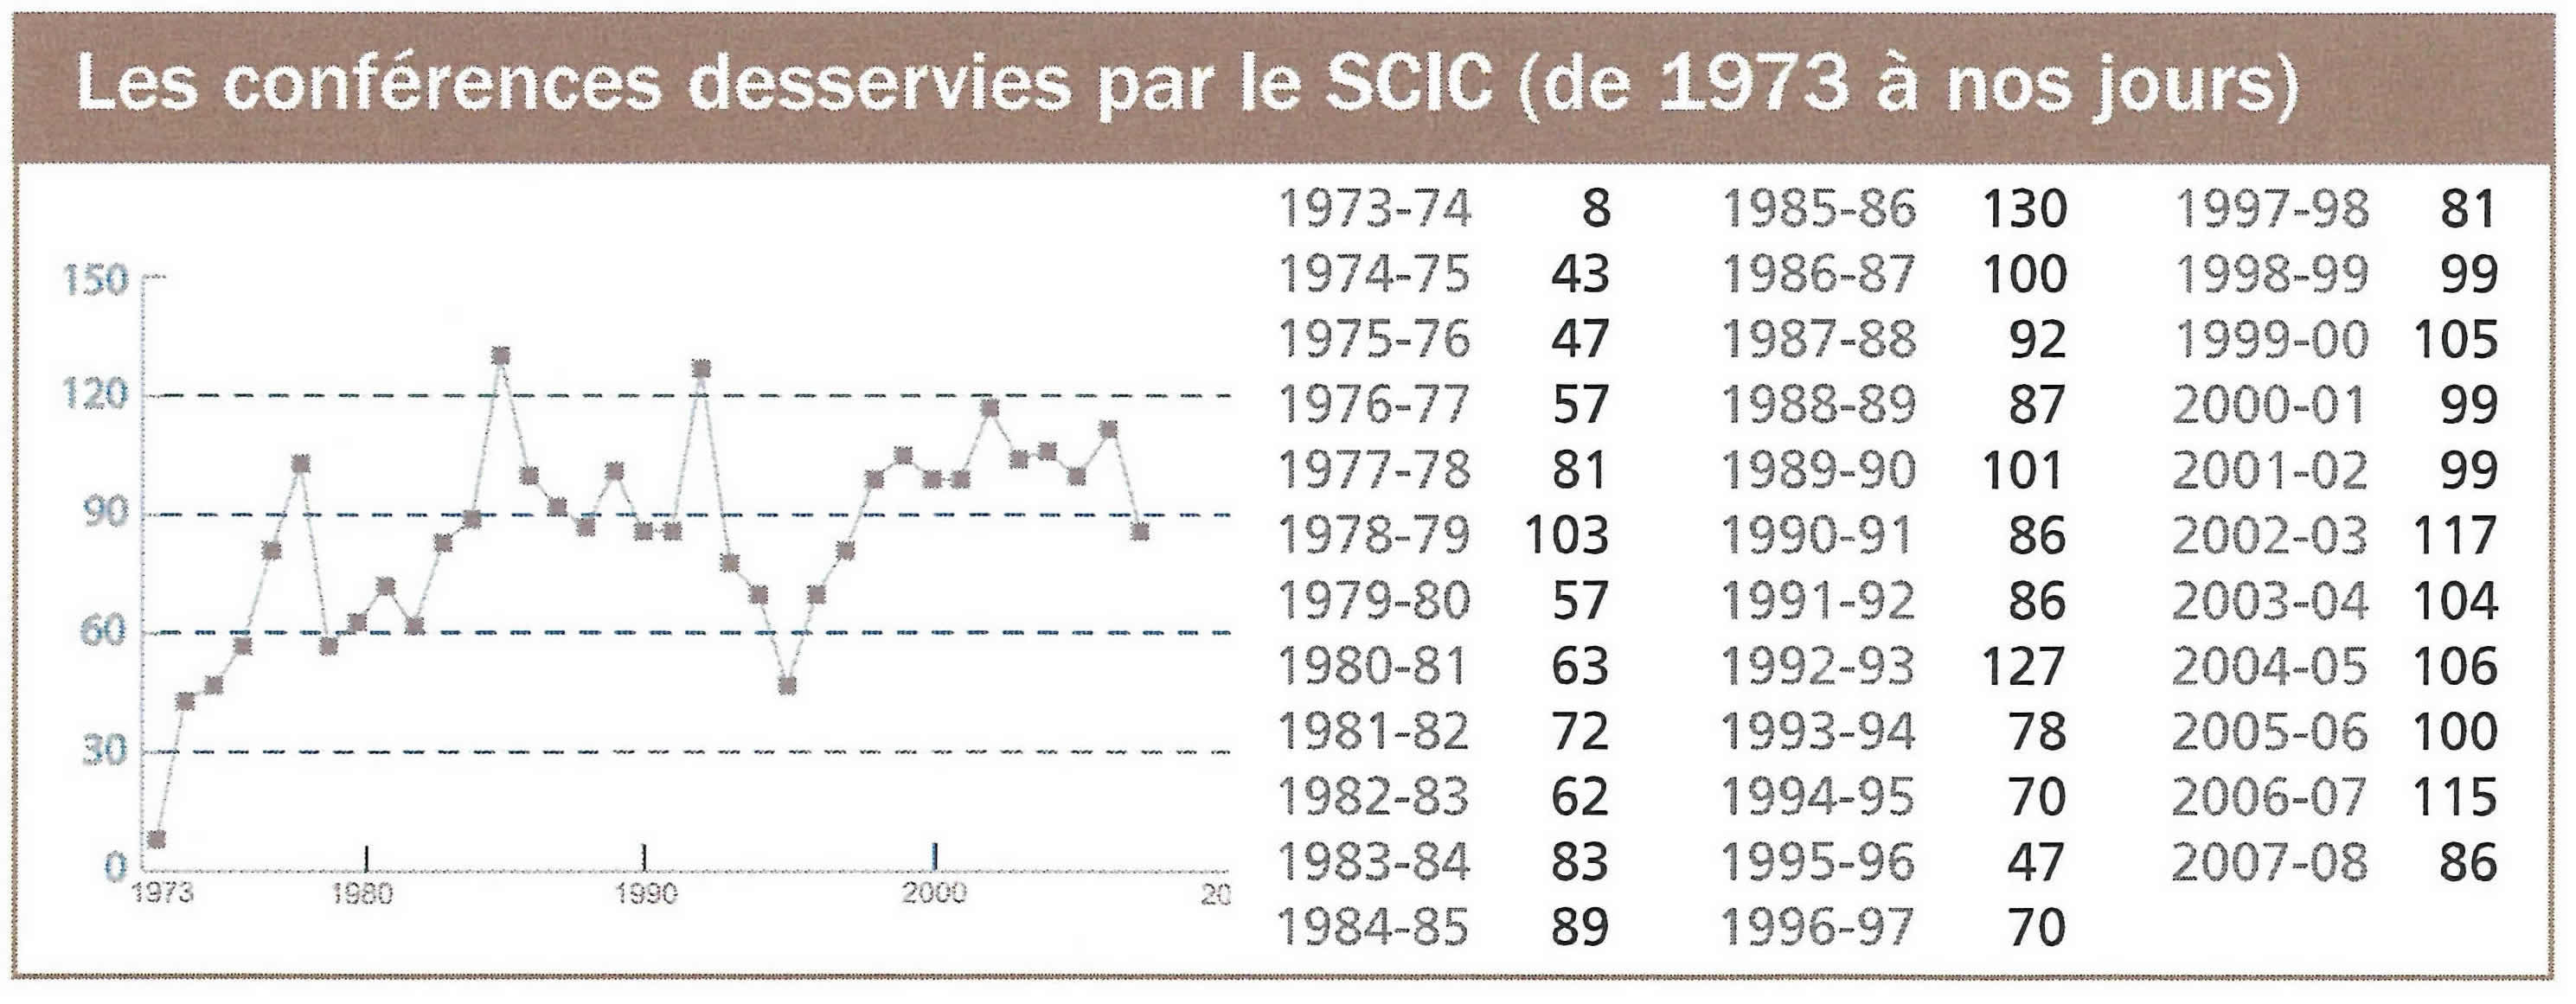 Nombre de confrences desservies par le SCIC de 1973-1974  2007-2008.